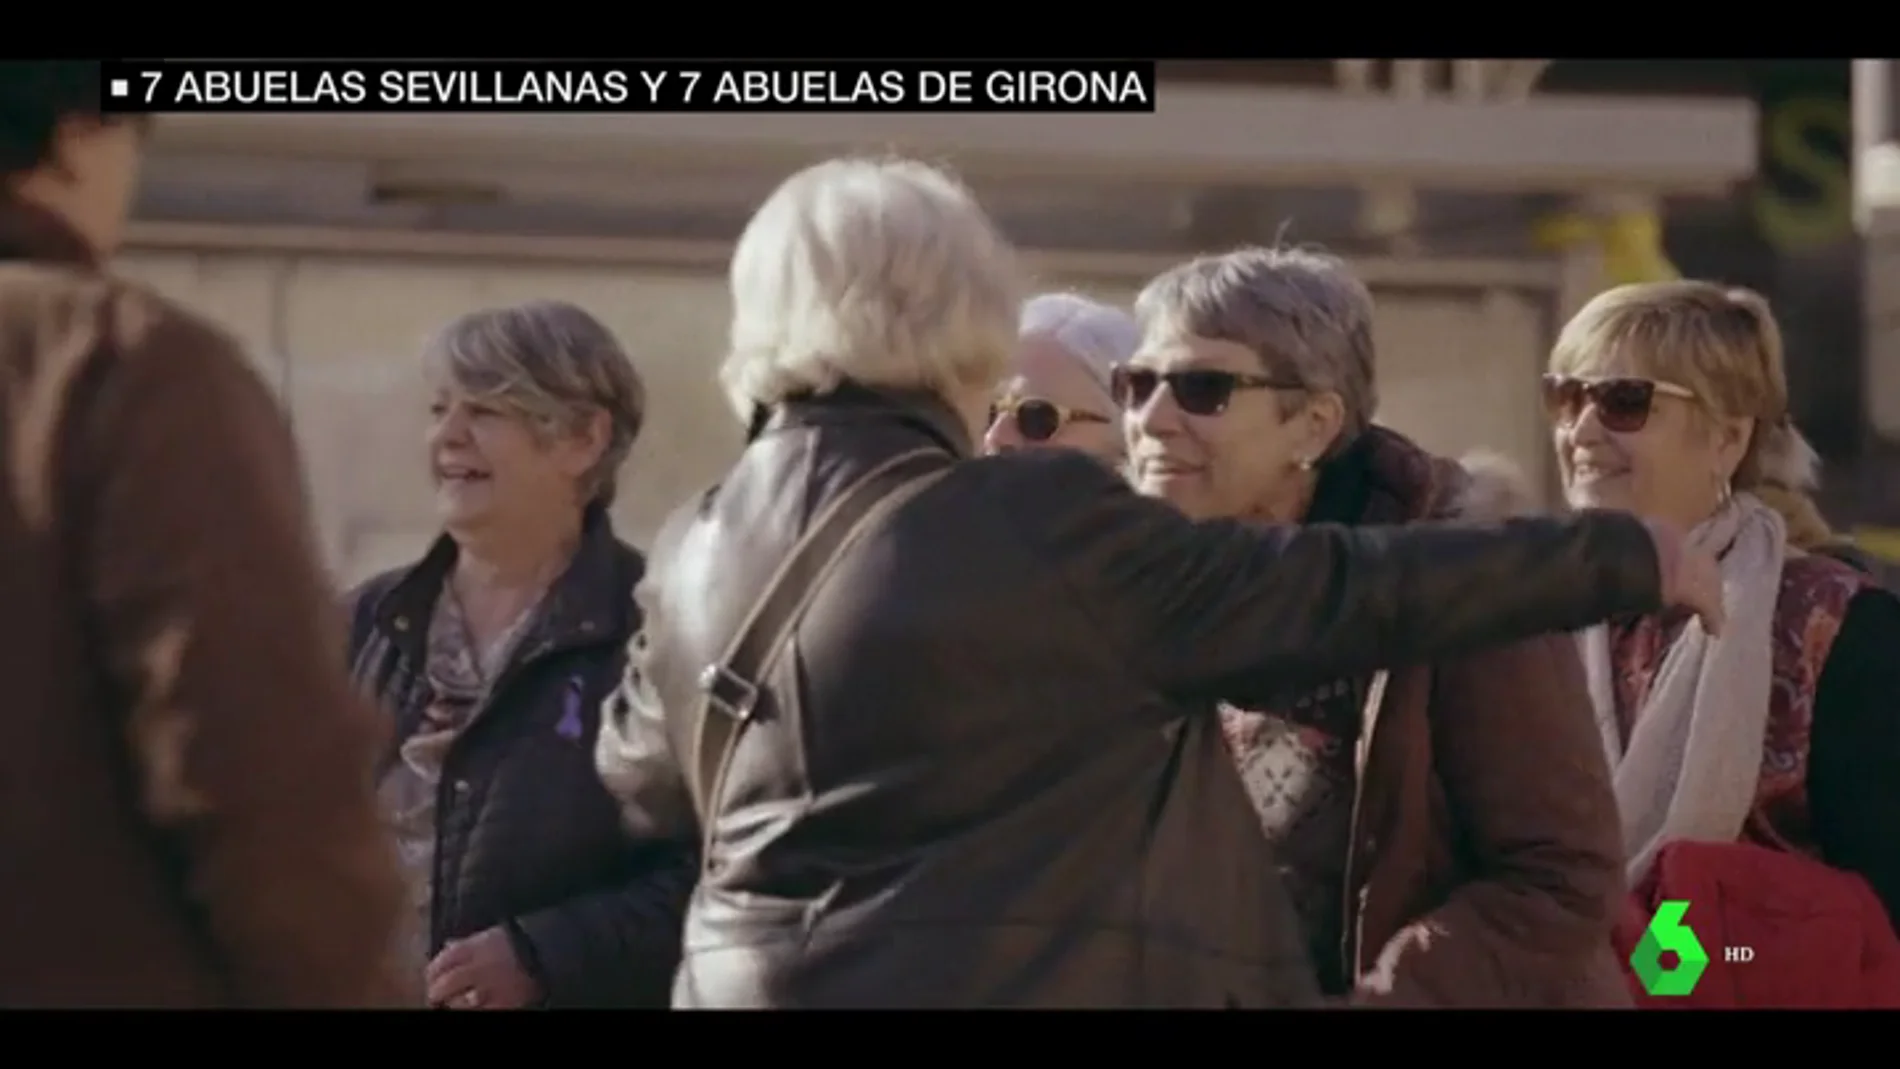 'Bienvenidas al Norte y Bienvenidas al Sur', el nuevo programa dónde siete abuelas catalanas y siete abuelas andaluzas comparten casa